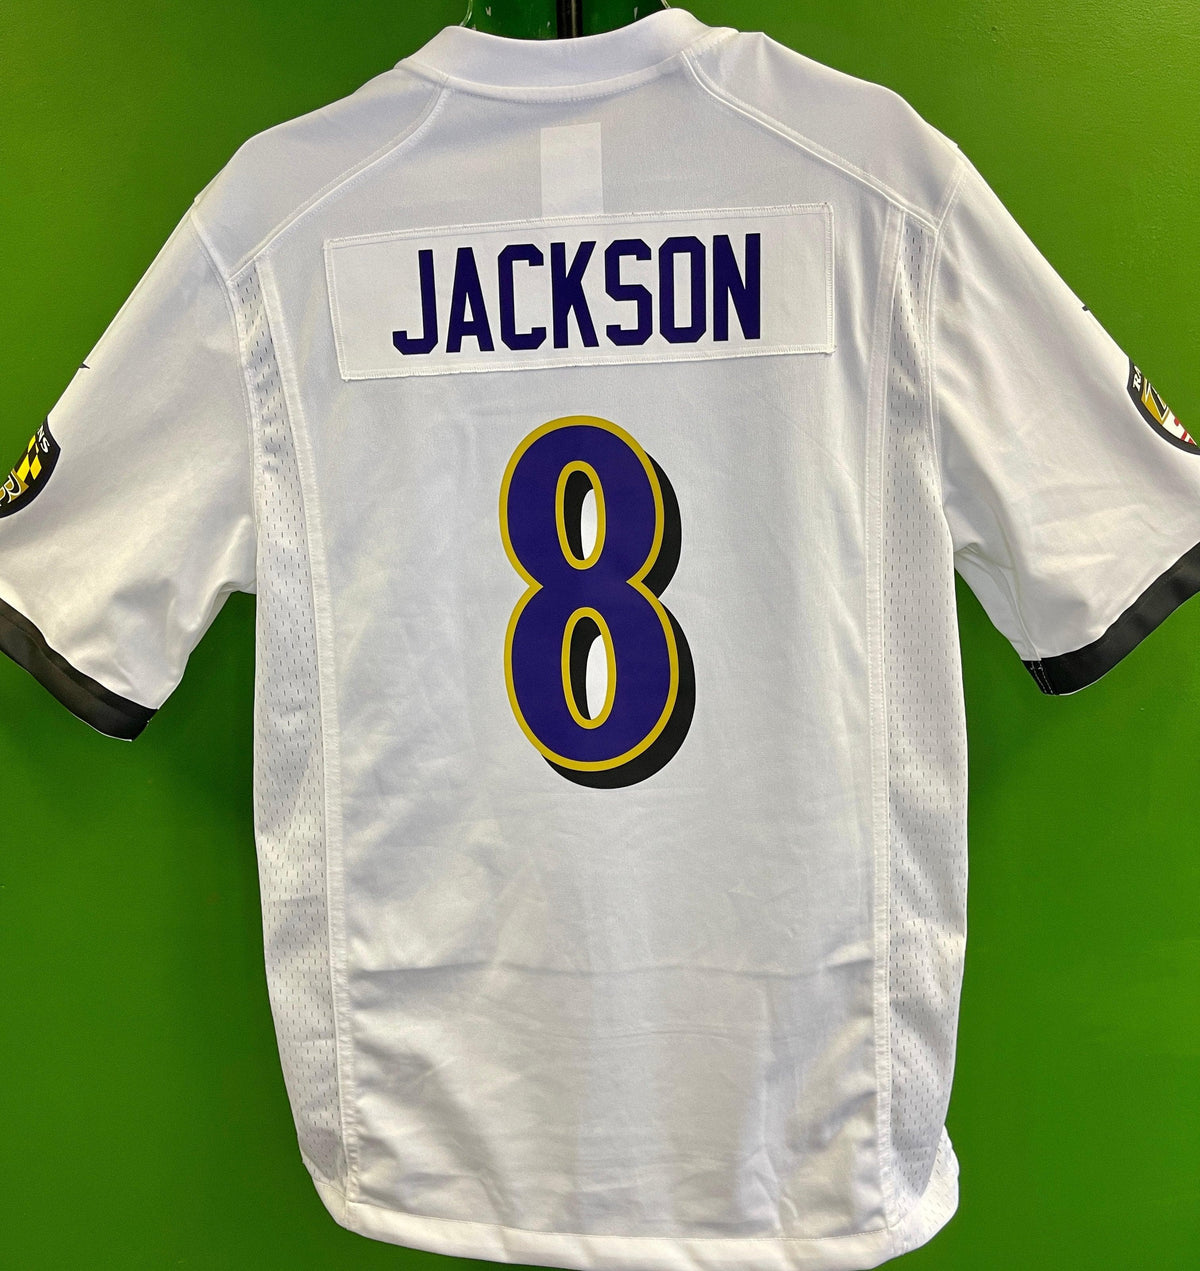 NFL Baltimore Ravens Lamar Jackson #8 Game Jersey Men's Medium NWT